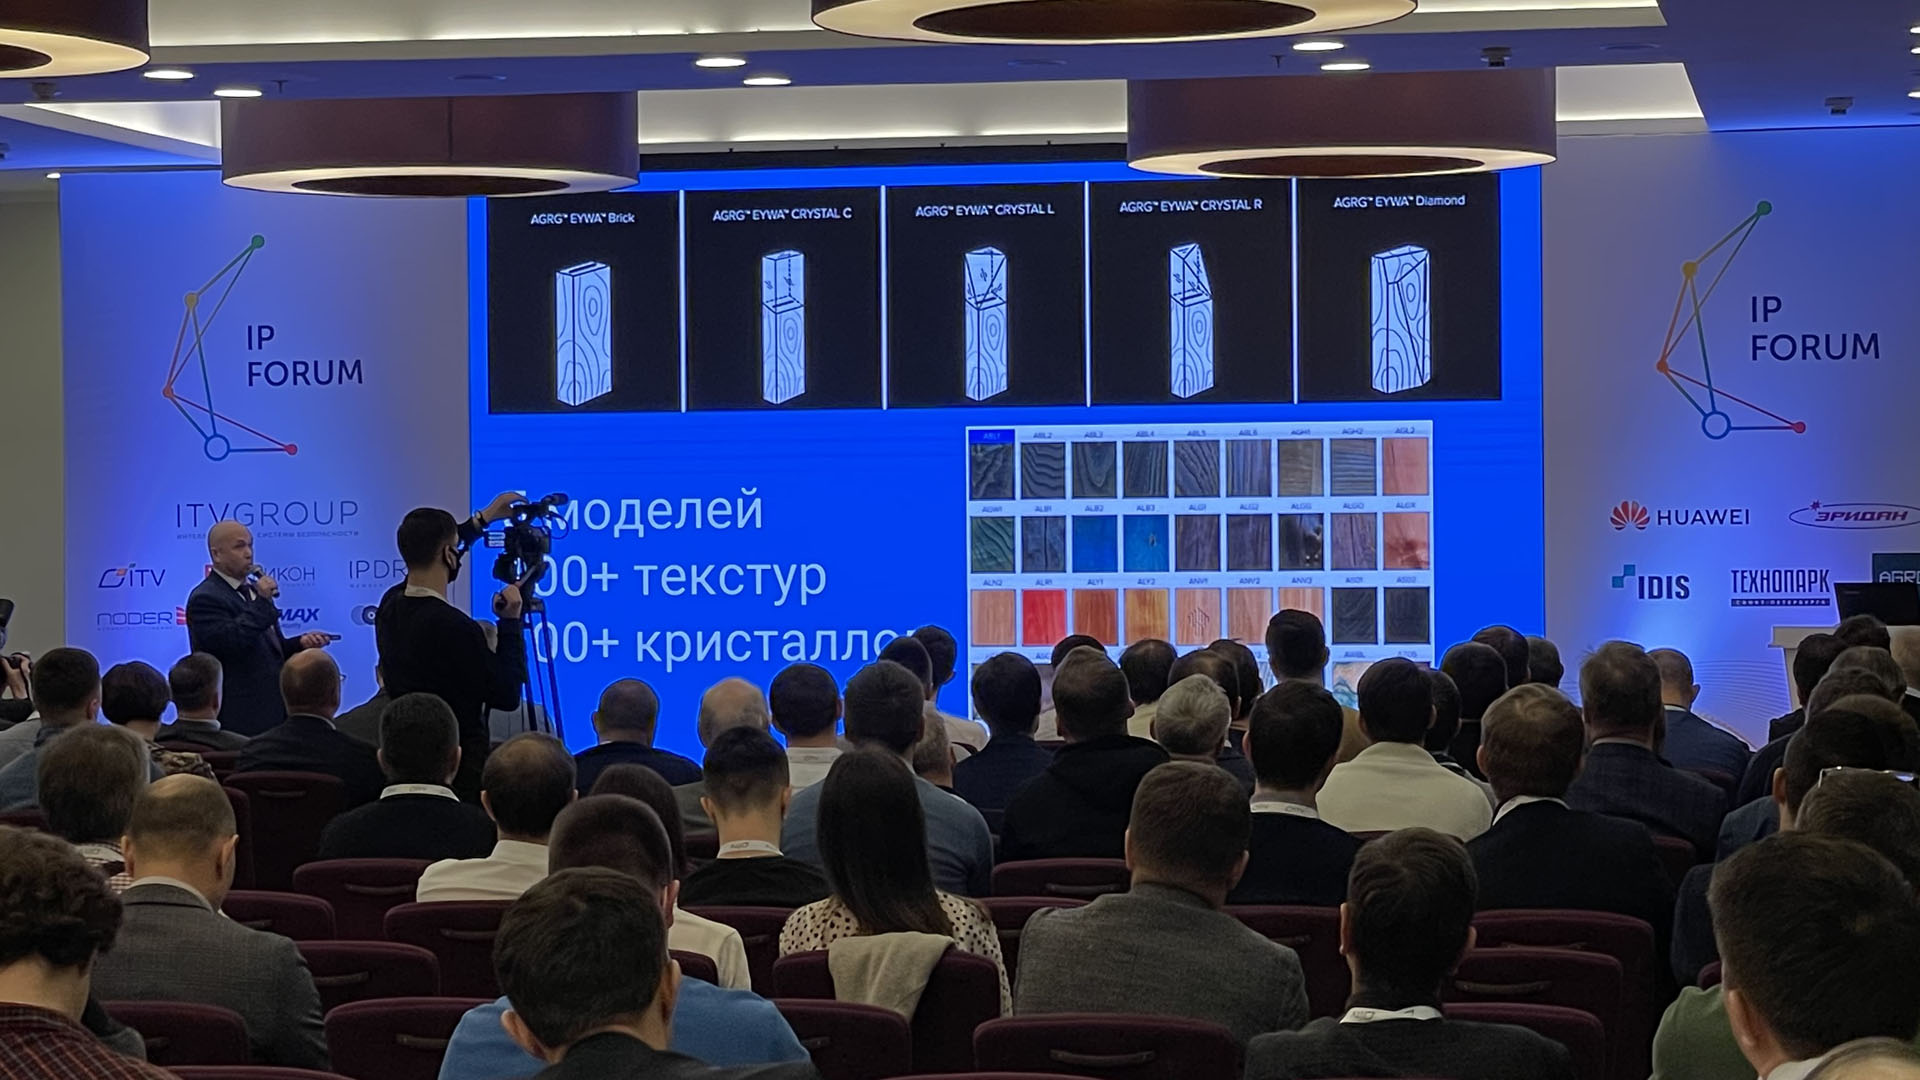 Дмитрий Шелестов рассказывает на IP Forum Санкт-Петербург о дизайнерских считывателях AGRG EYWA из дерева